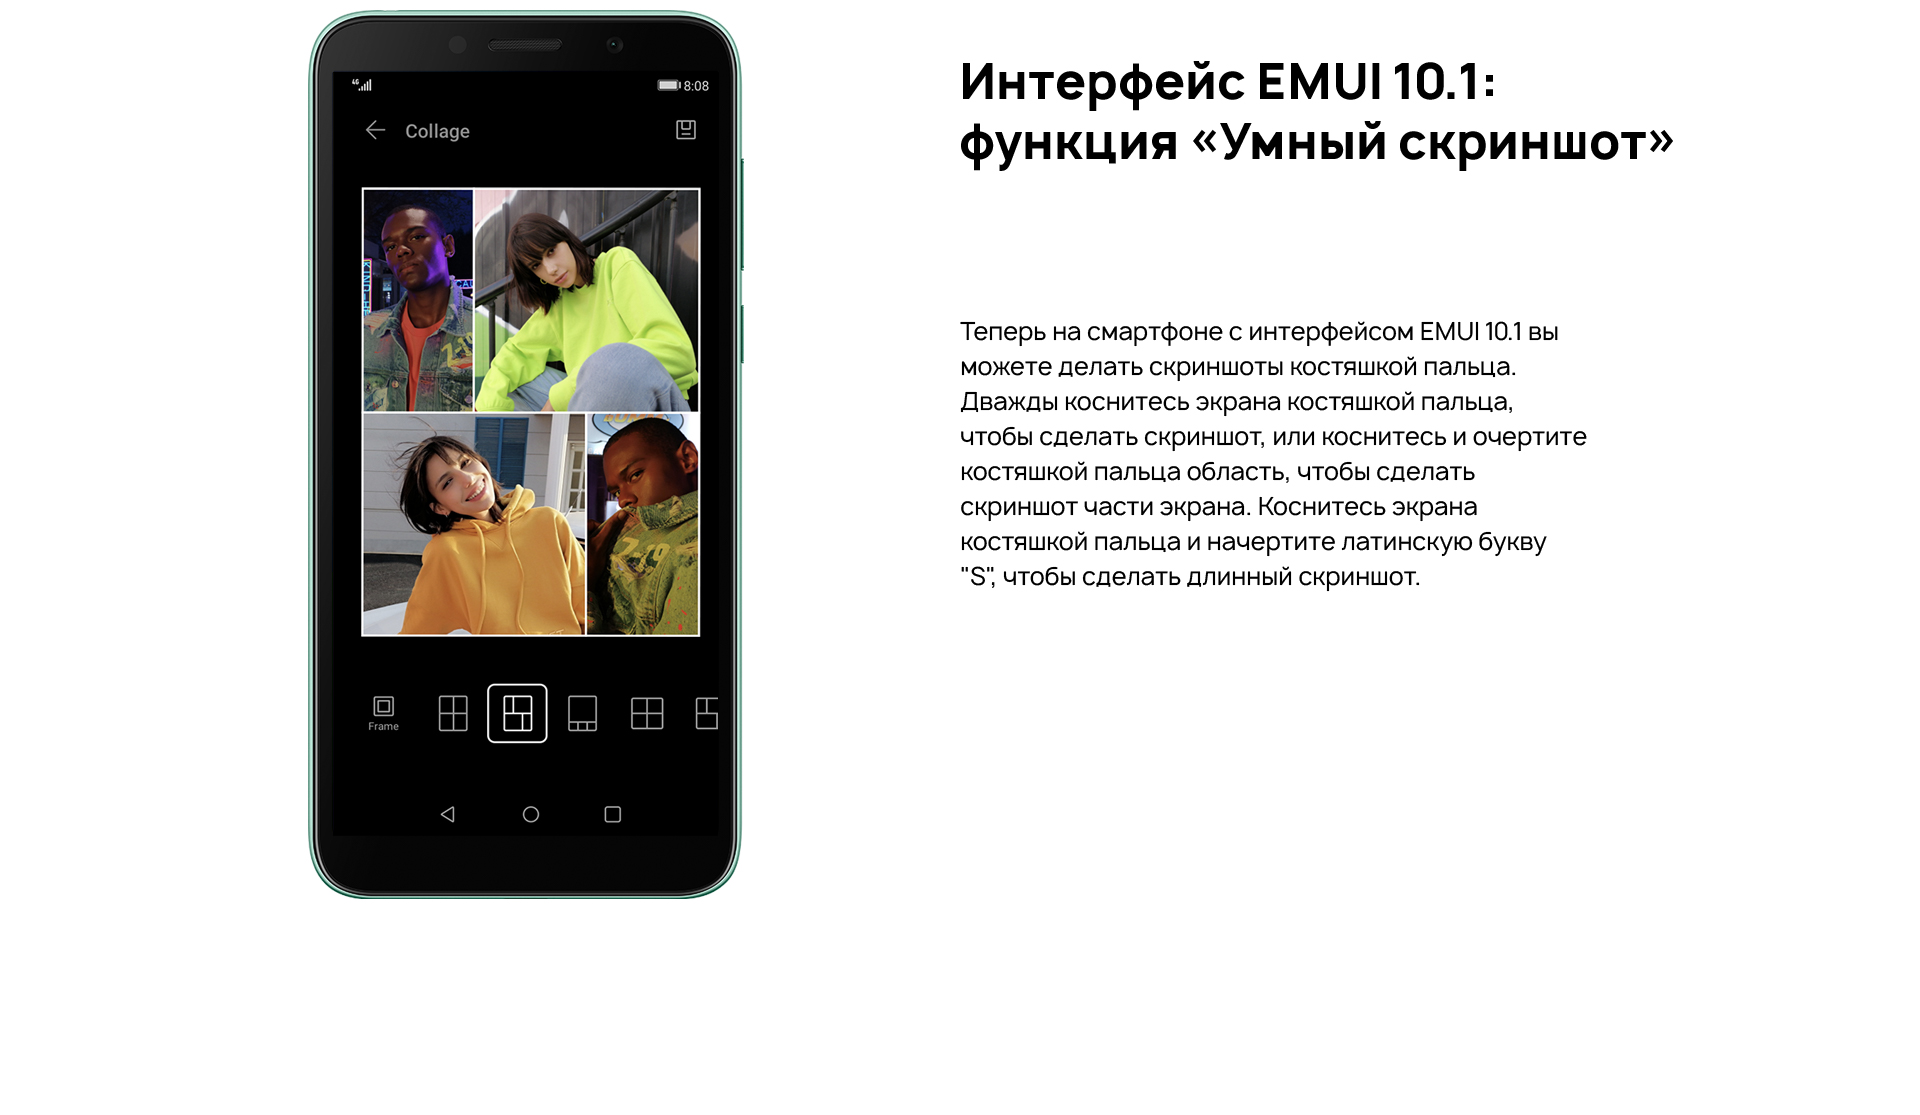 Интерфейс EMUI 10.1: функция «Умный скриншот». Теперь на смартфоне с интерфейсом EMUI 10.1 вы можете делать скриншоты костяшкой пальца. Дважды коснитесь экрана костяшкой пальца, чтобы сделать скриншот, или коснитесь и очертите костяшкой пальца область, чтобы сделать скриншот части экрана. Коснитесь экрана костяшкой пальца и начертите латинскую букву S, чтобы сделать длинный скриншот.